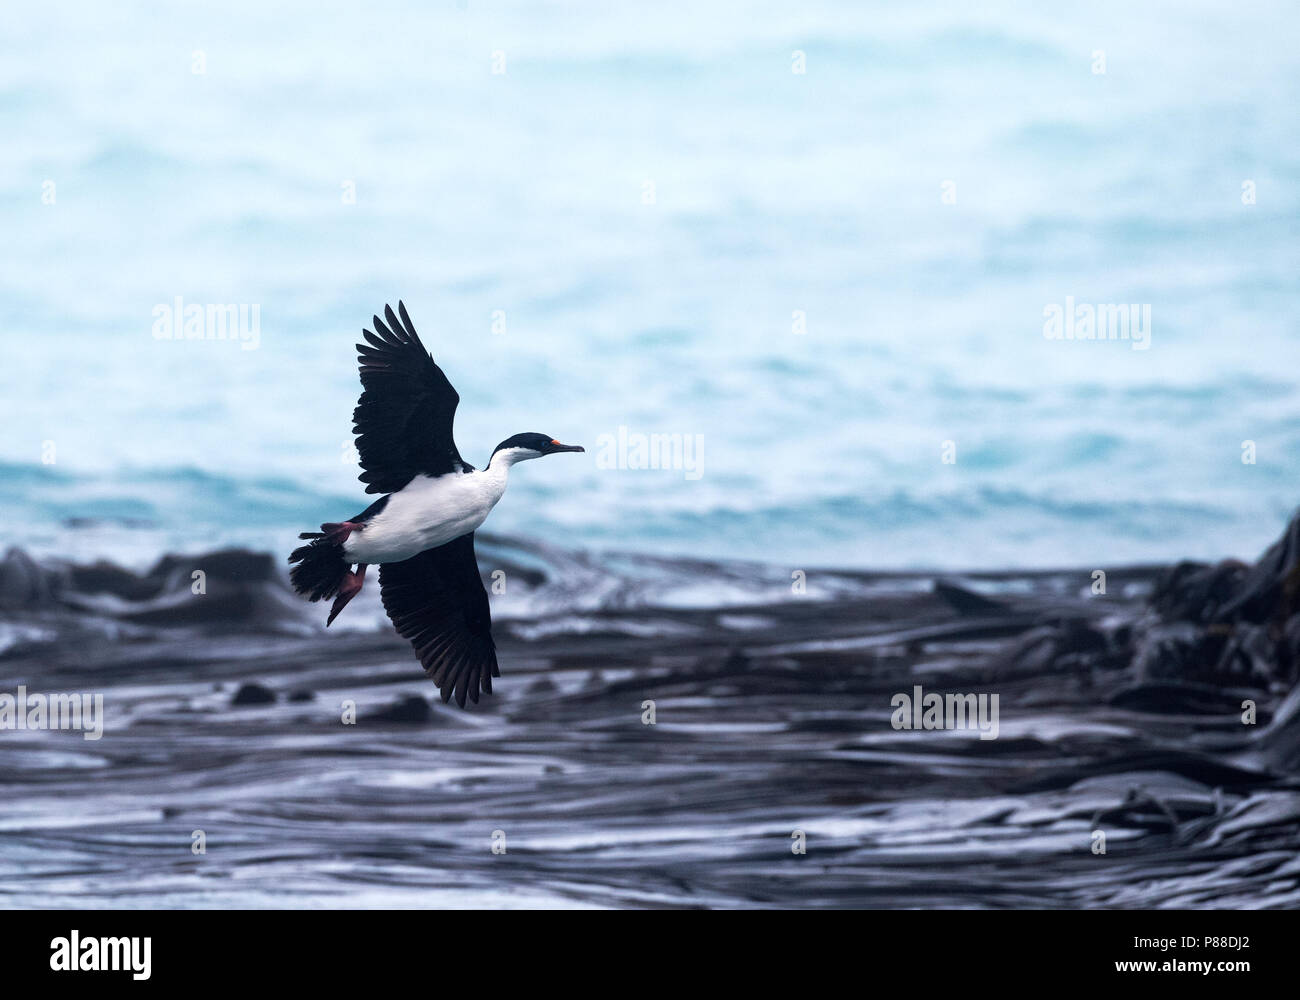 Shag Macquarie (Leucocarbo purpurascens) près de la station de recherche en mer battant Buckles bay, l'île Macquarie. C'est un cormoran marin originaire d'Macqu Banque D'Images